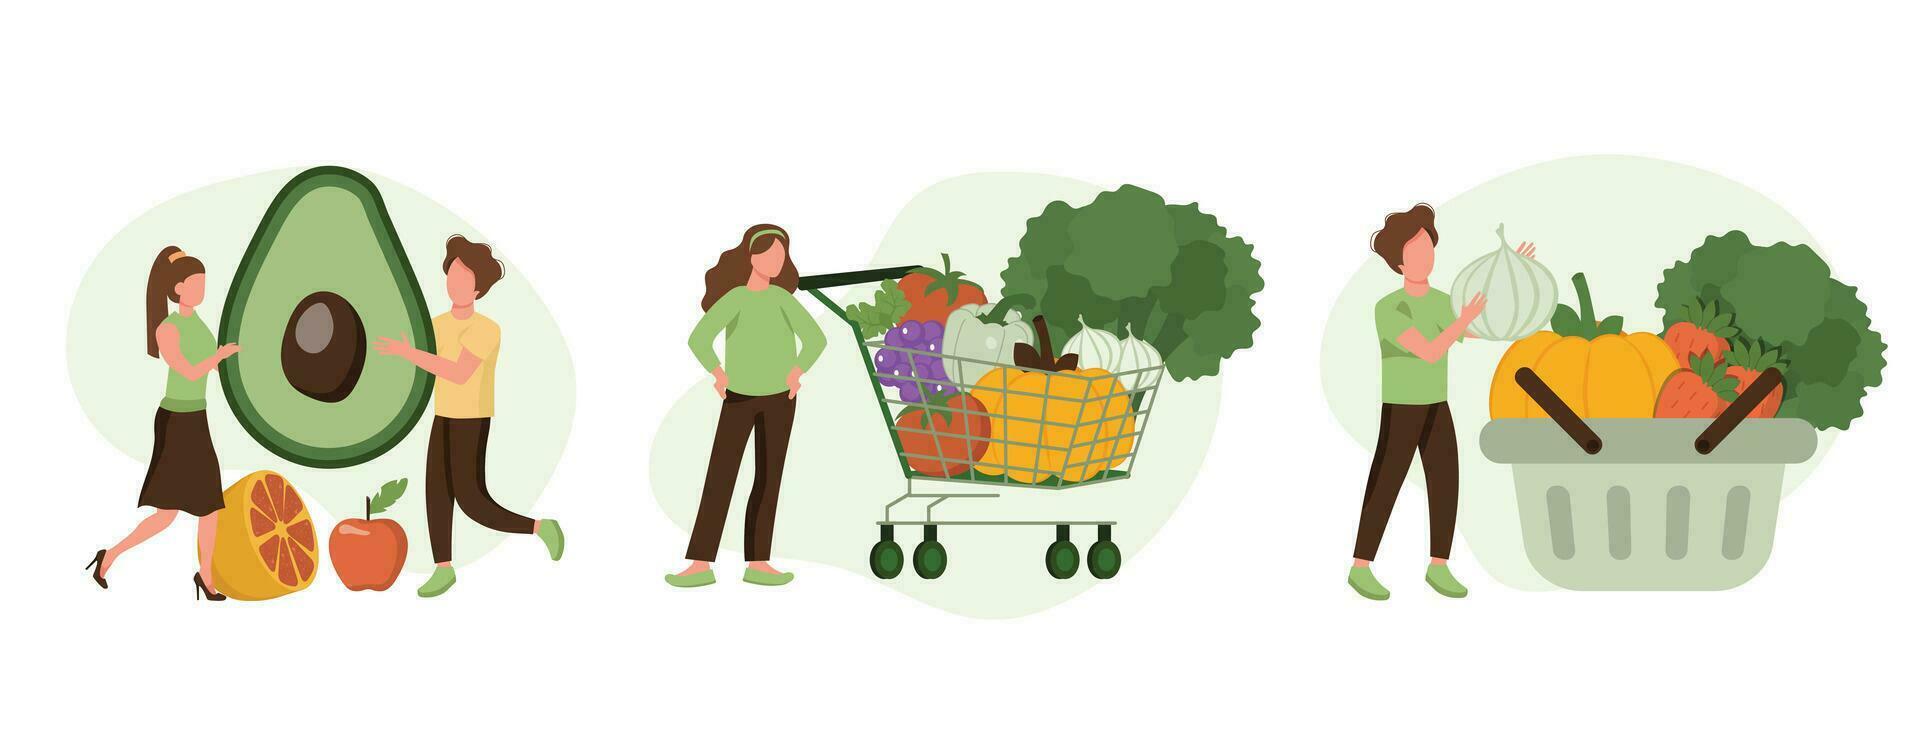 kruidenier groenten illustratie set. karakter buying vers biologisch groenten en zetten in boodschappen doen trolley en mand. lokaal productie ondersteuning concept. vector illustratie.